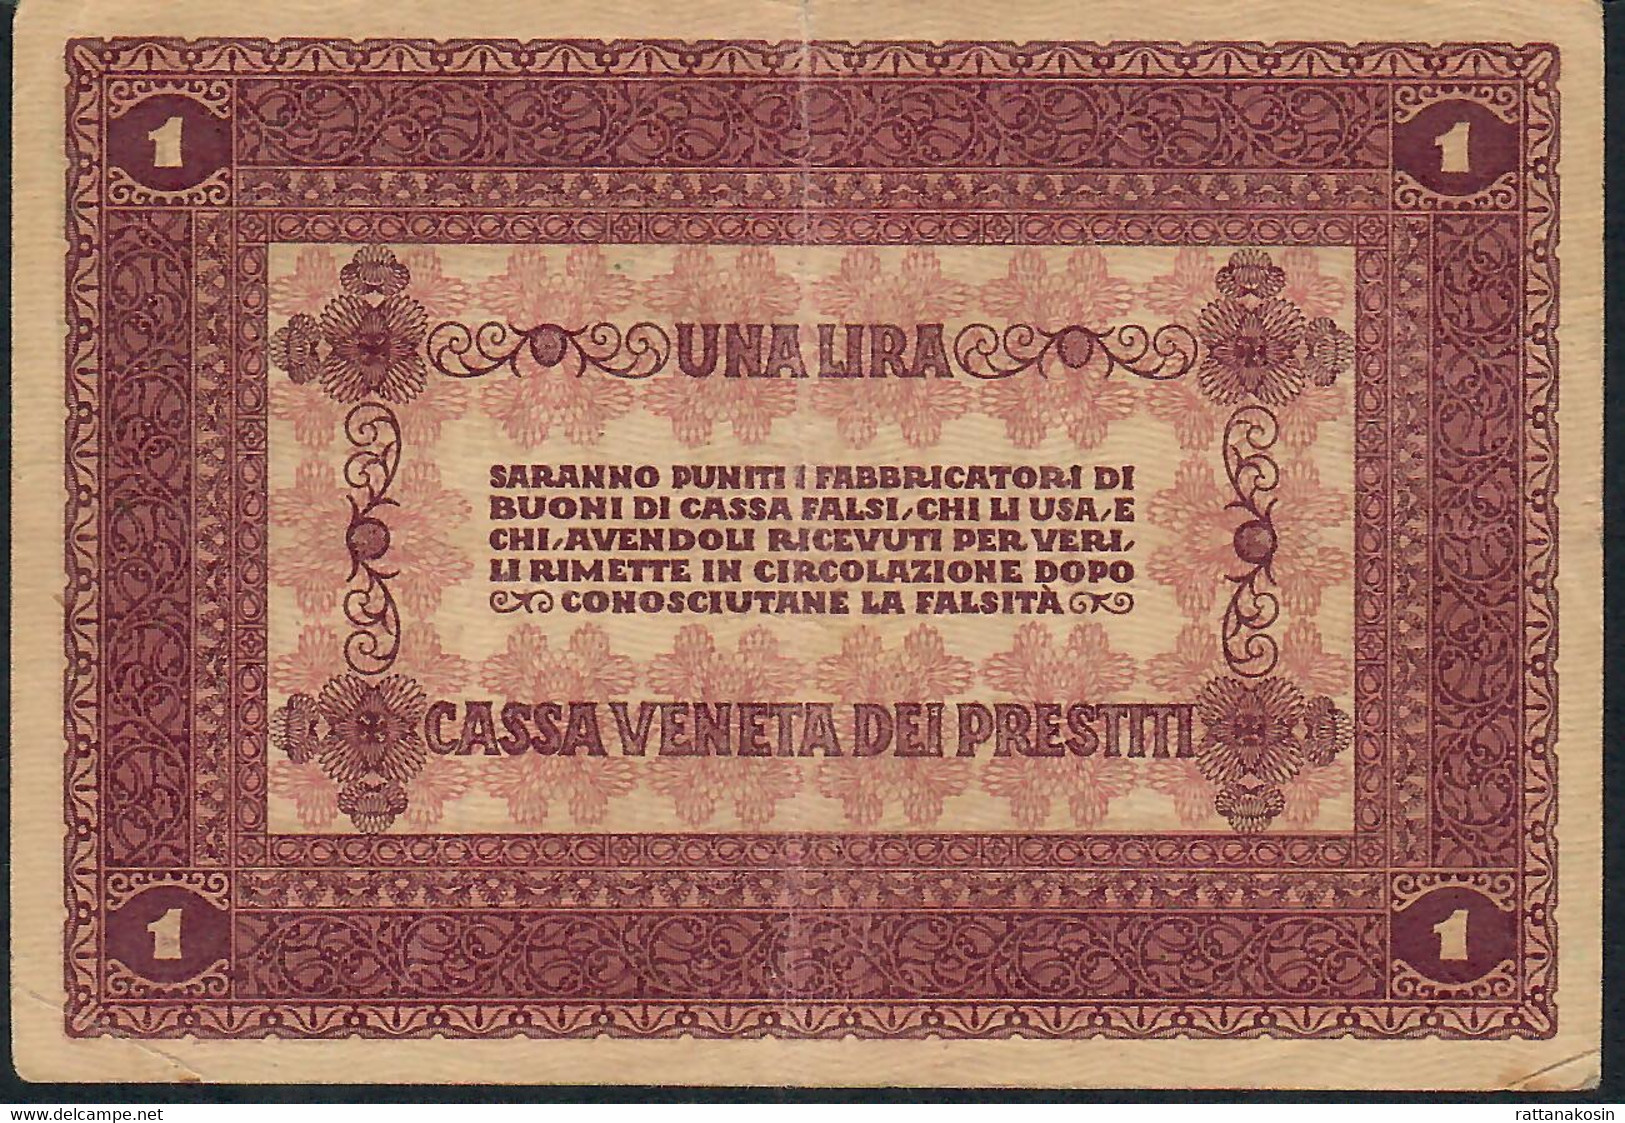 ITALIA 1 LIRA 2 GENNAIO 1918     VF    NO P.h. - Buoni Di Cassa